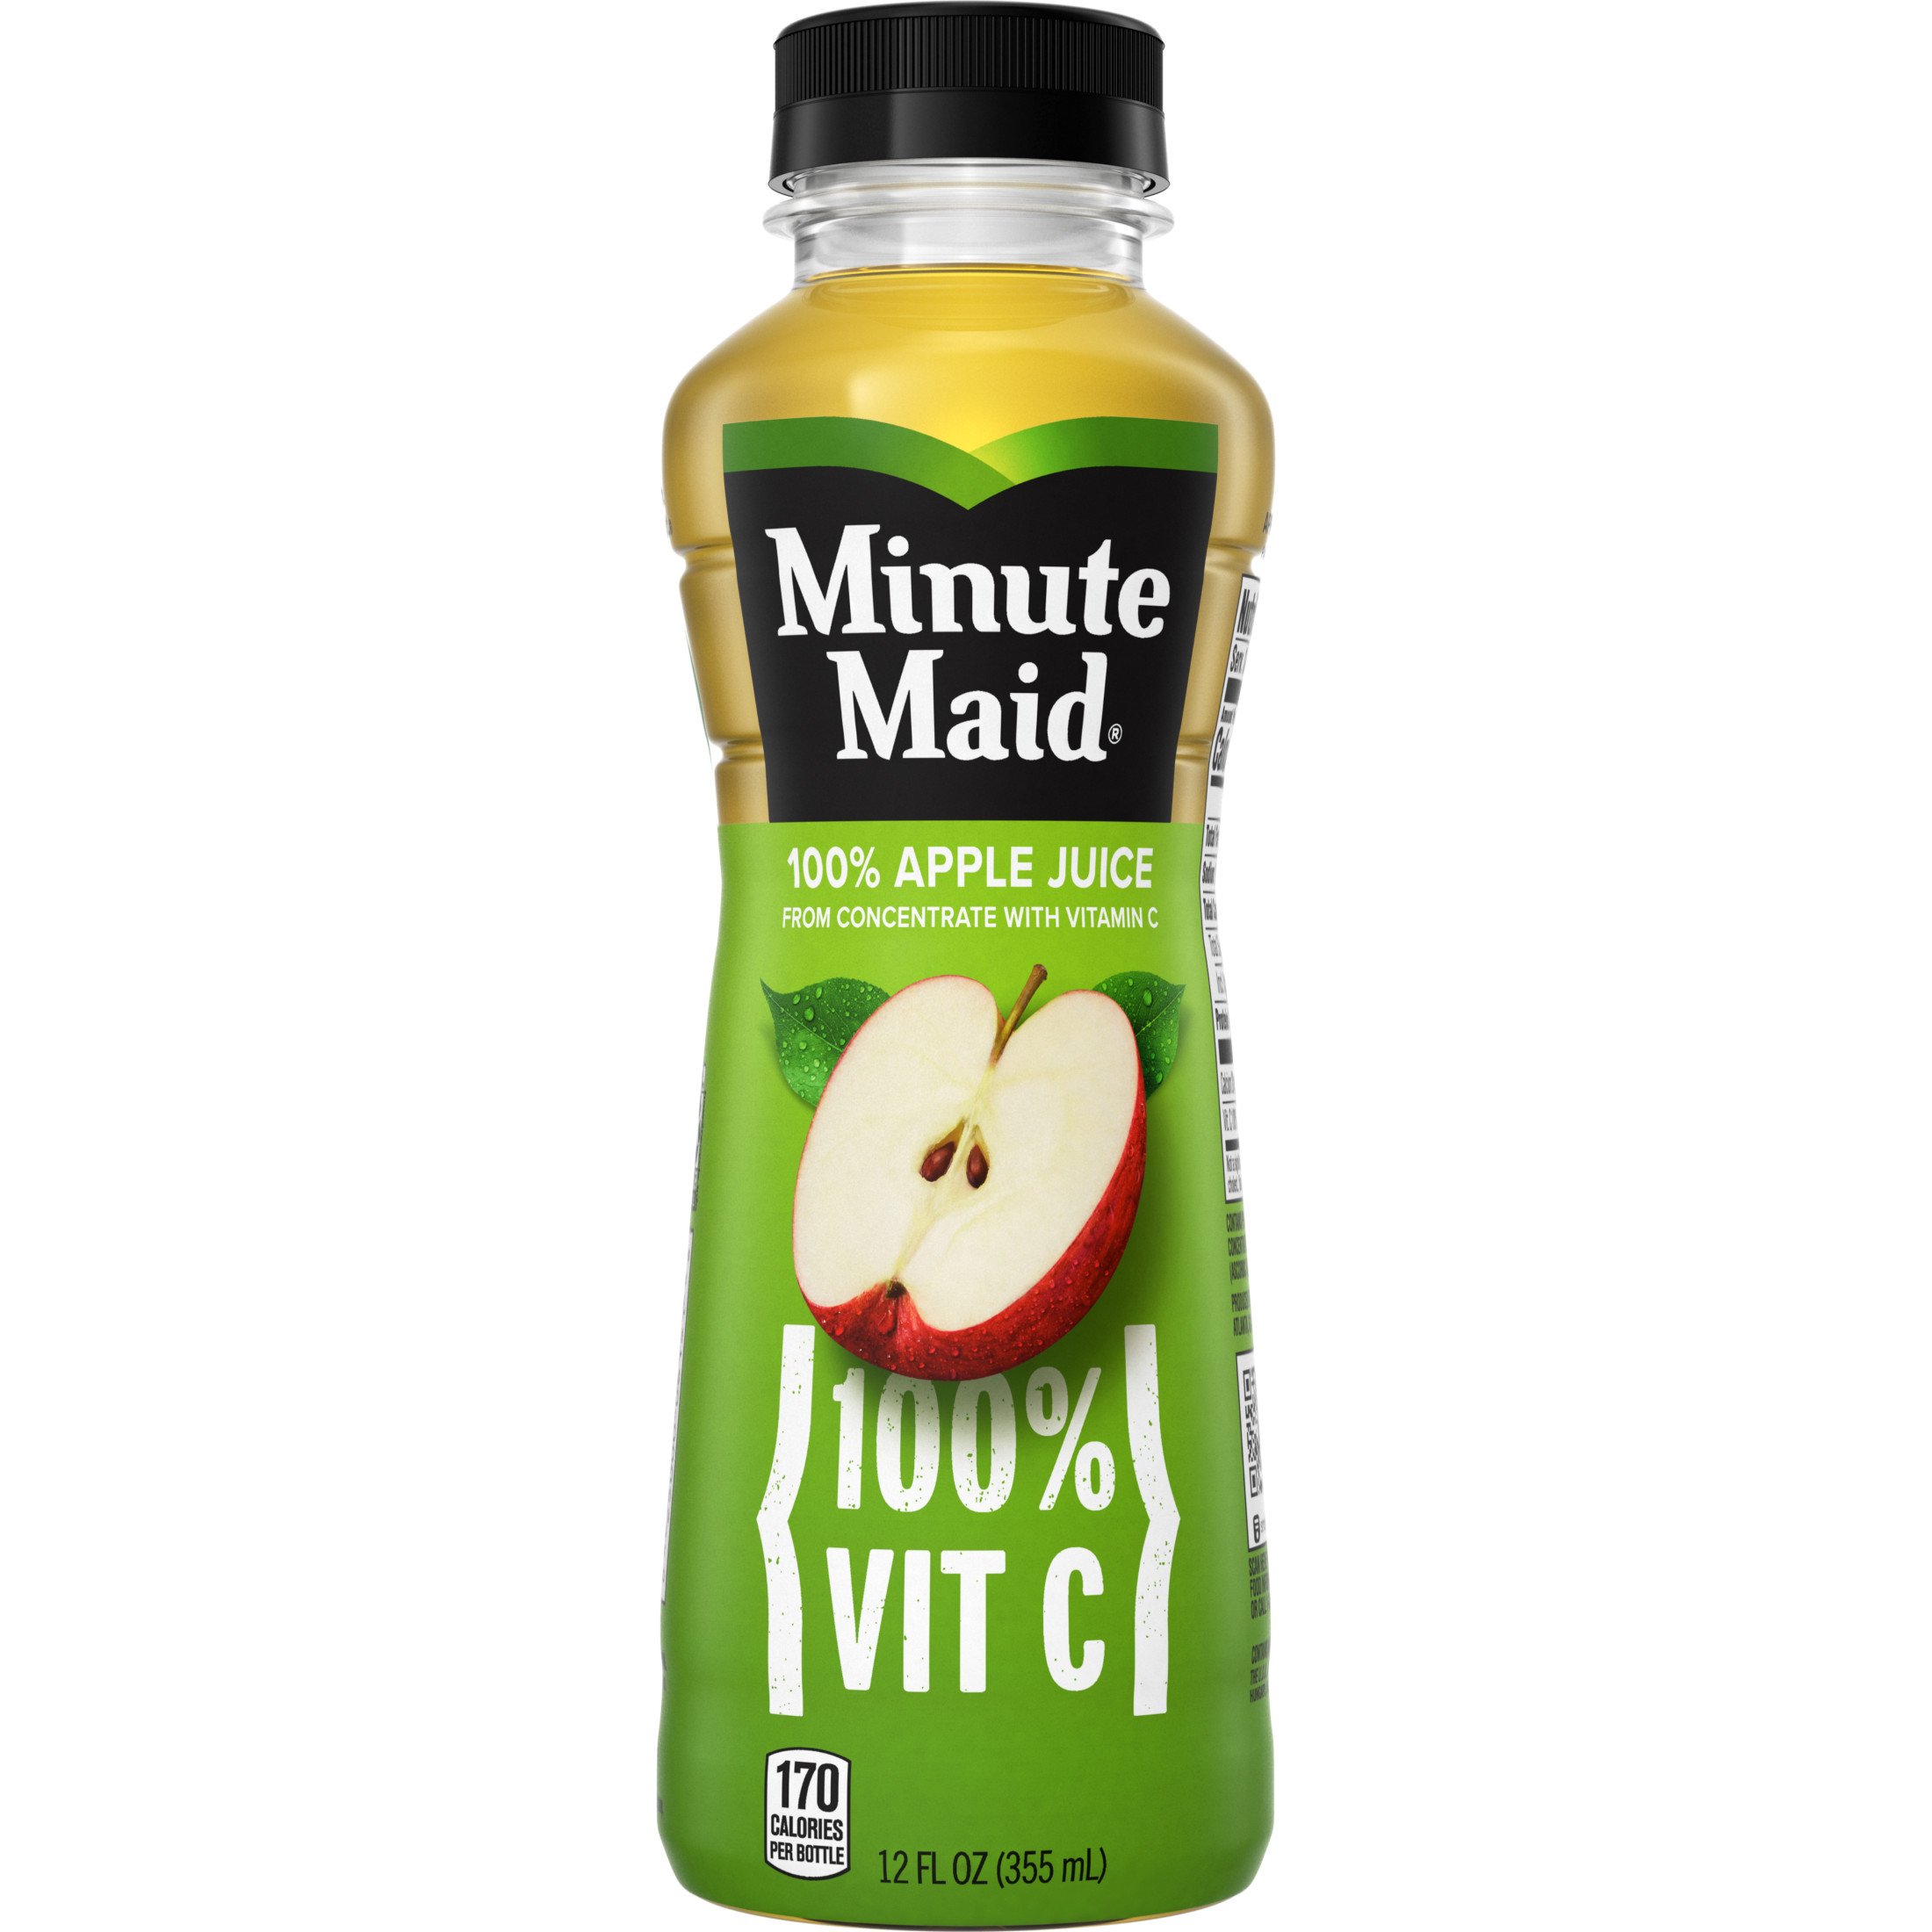 Minute Maid 100% Vitamin C Apple Fruit Juice, 12 fl oz Bottle - image 1 of 8